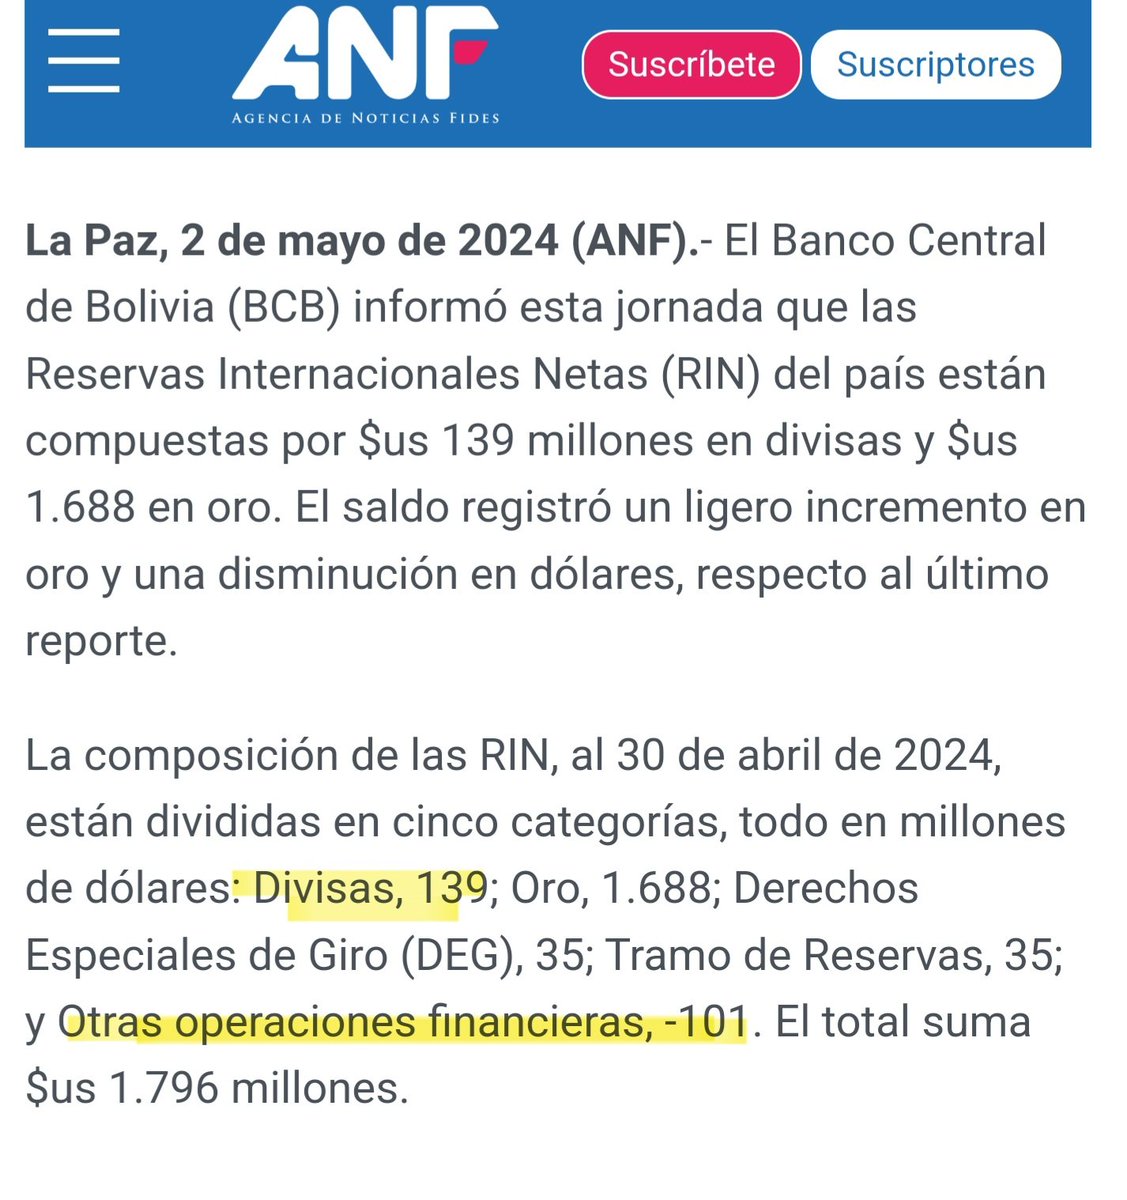 #Bolivia sin dólares, >$18.500 M se fueron en ~10 años de RIN, oro, DEG, encaje y fondos (ahorro, hidroc, FINPRO). Hoy quedan:
✓ $1.688 M oro (↓Q?, ↑precio) nos dicen, ¿cuánto es certificado? Por ley >22 TM. ¿Es así?
✓ Divisas $139M-$101M = $38 M netas. 
Crisis p saqueo azul.